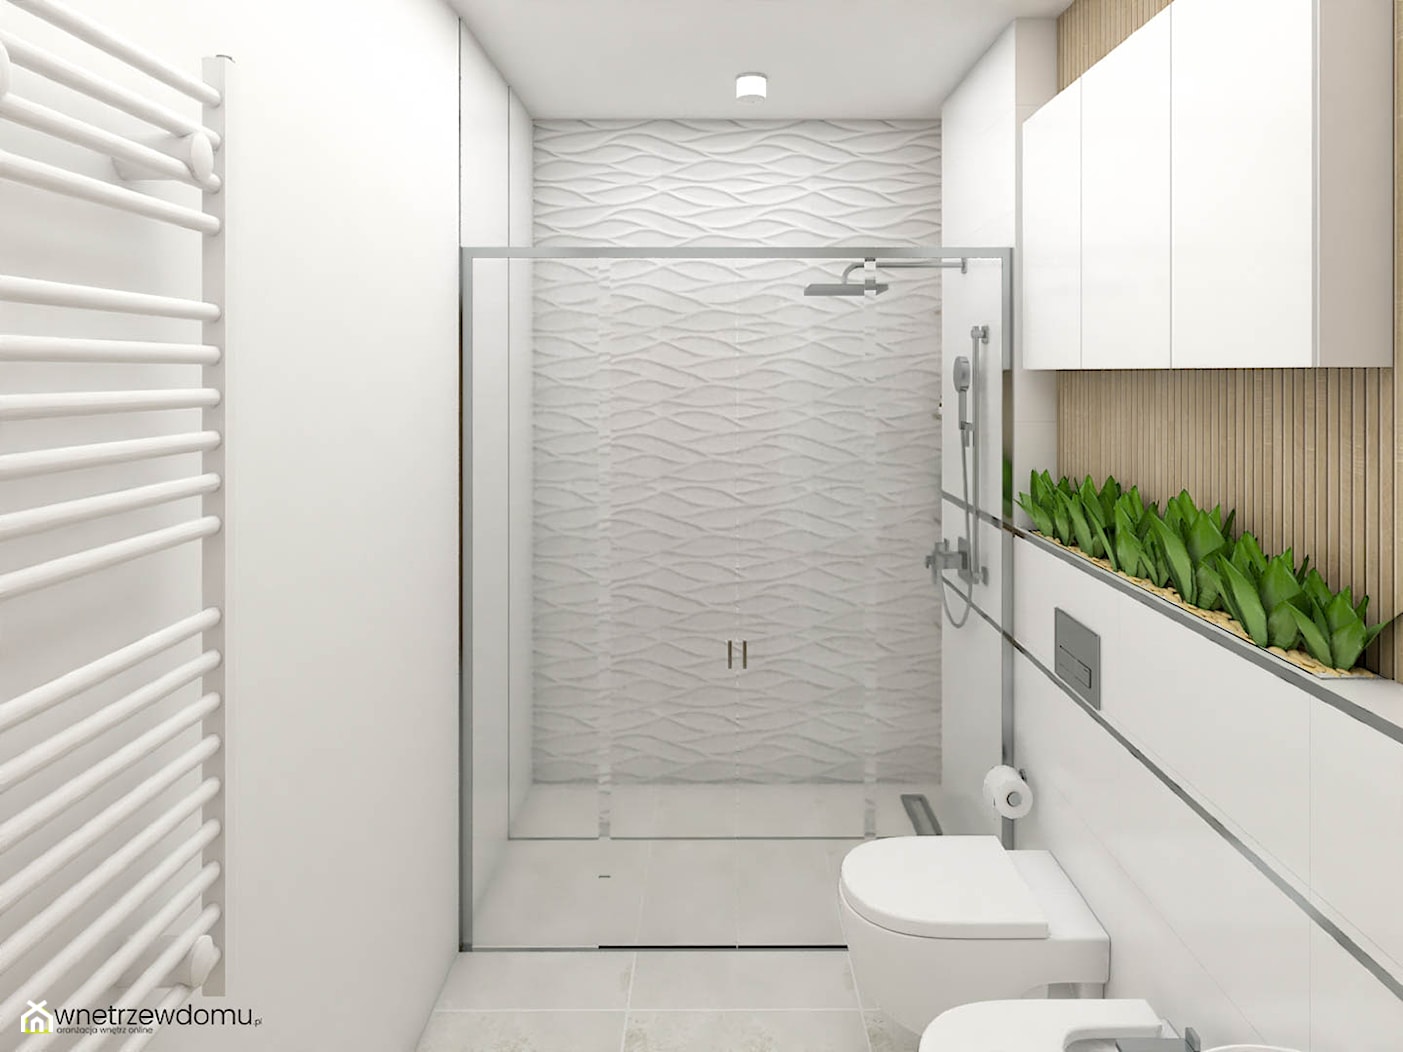 Strukturalne płytki w jasnej łazience - zdjęcie od wnetrzewdomu - Homebook